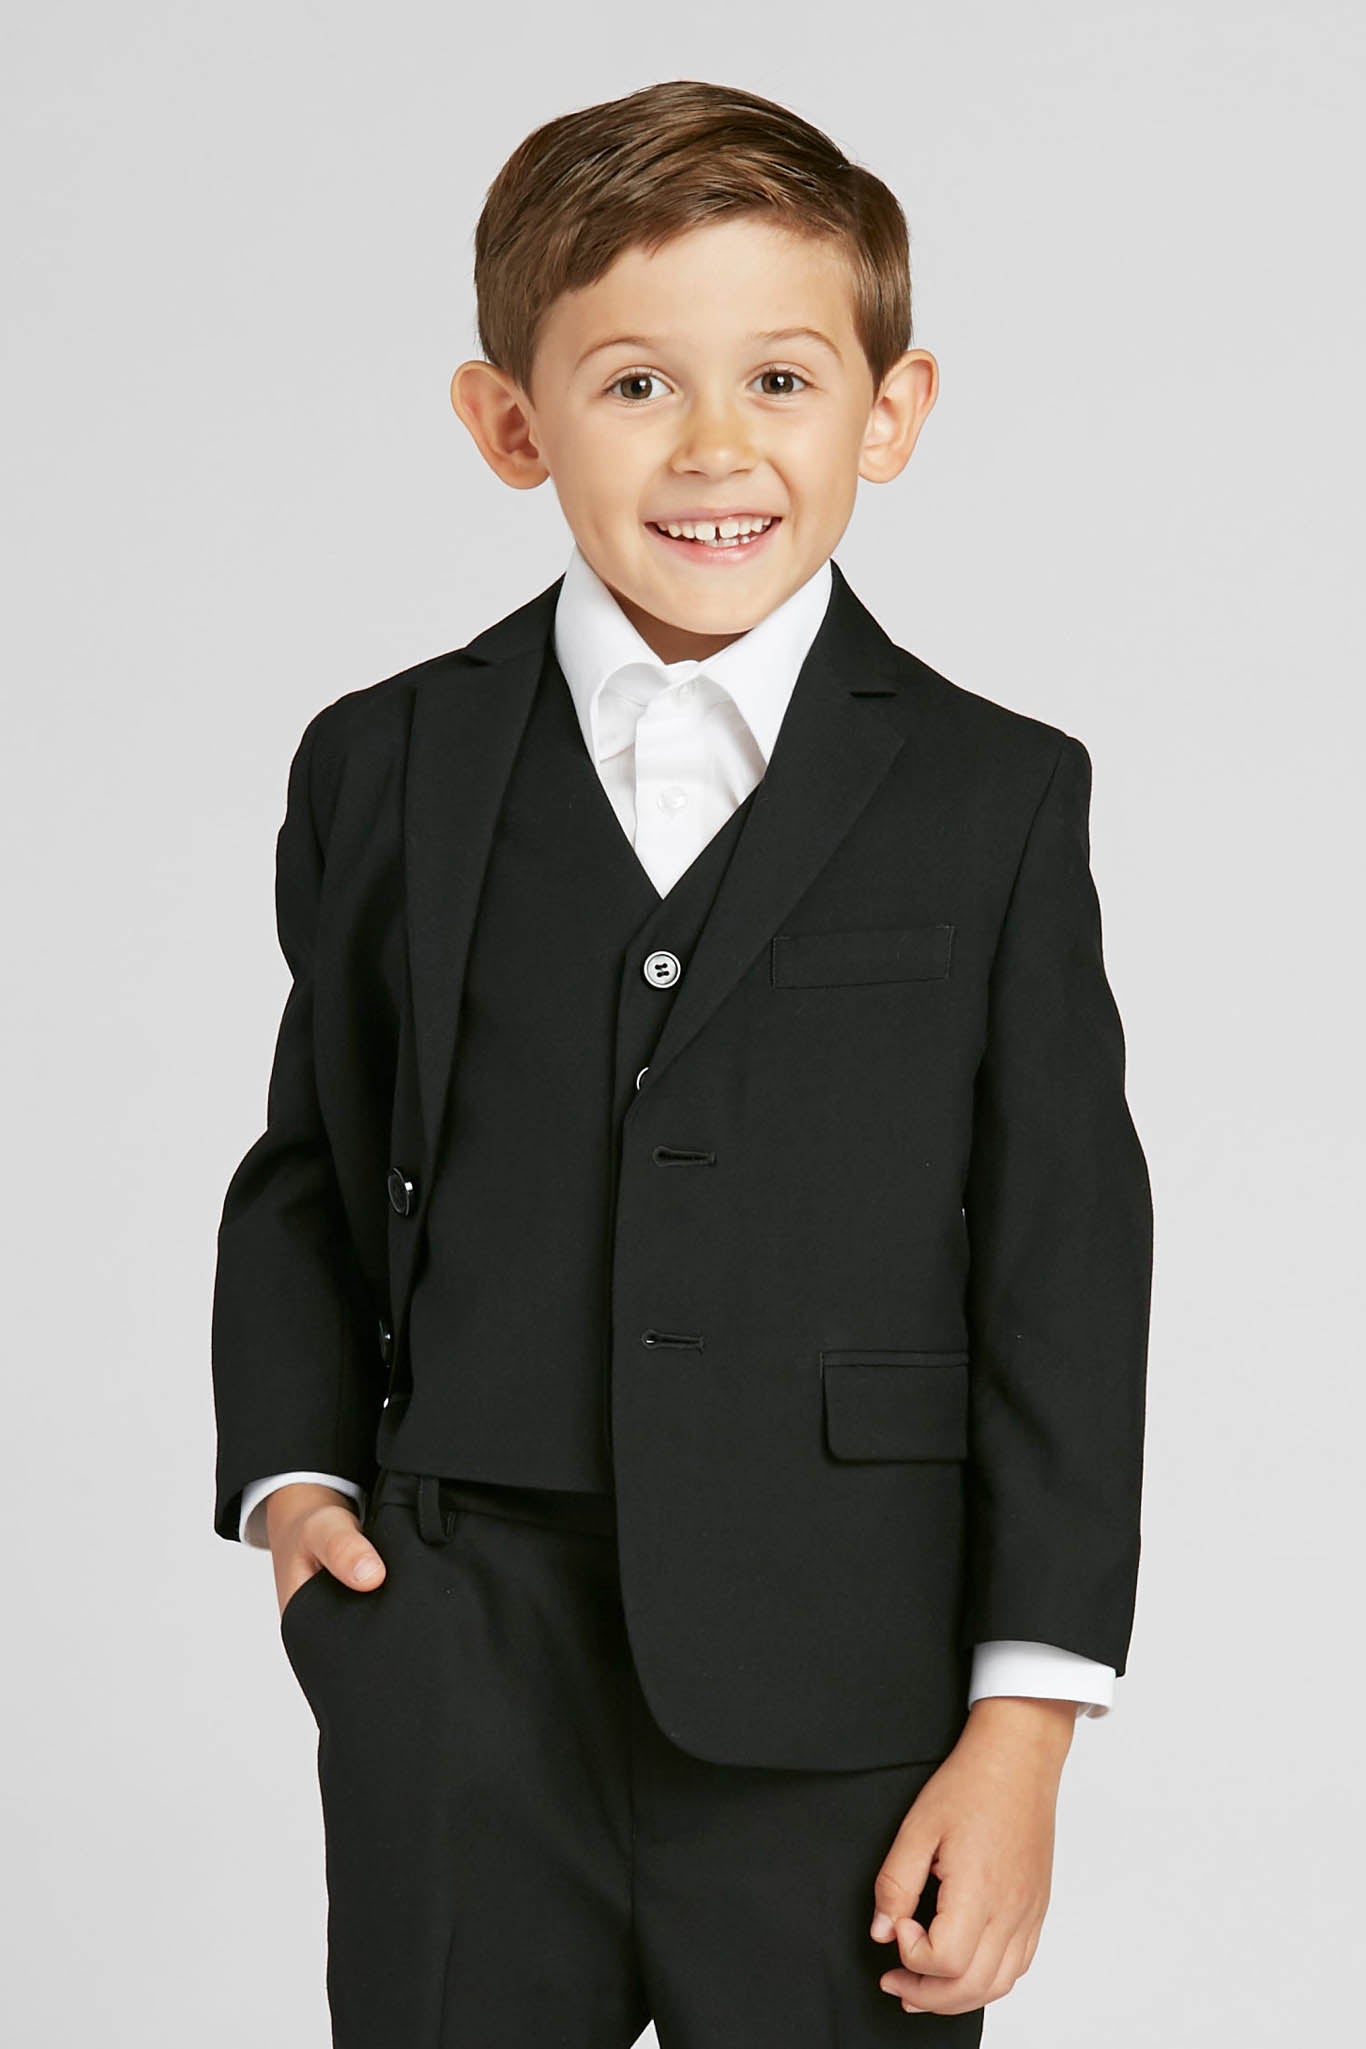 Classic Black Kids Suit by SuitShop